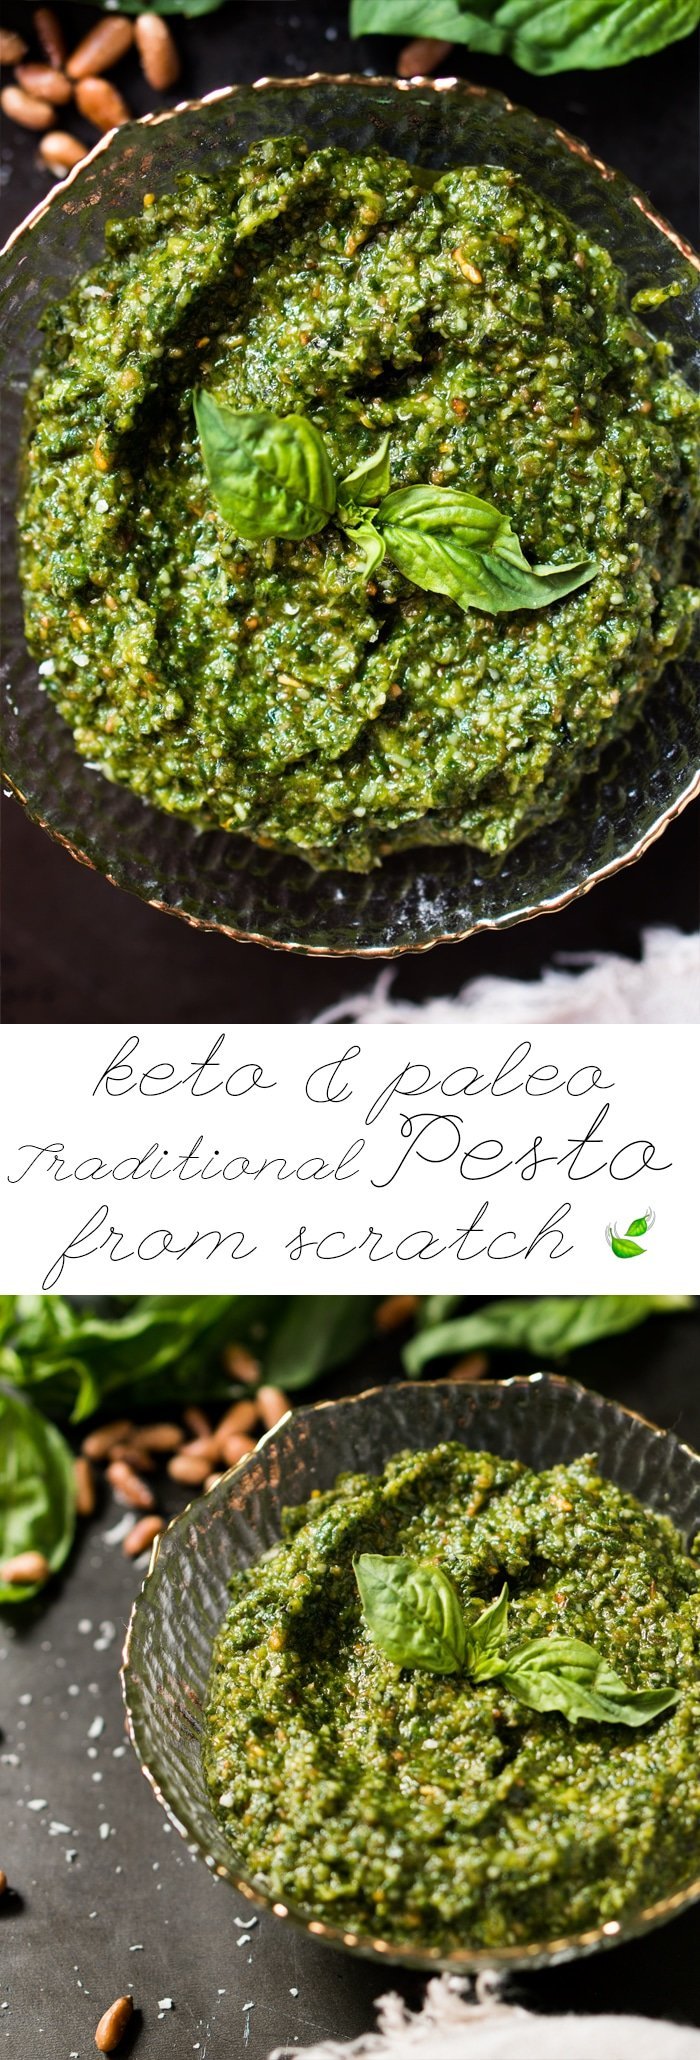 Paleo, Low Carb & Keto Pesto 🍃 A traditional Italian recipe from scratch! #keto #ketodiet #lowcarb #paleo #ketorecipes